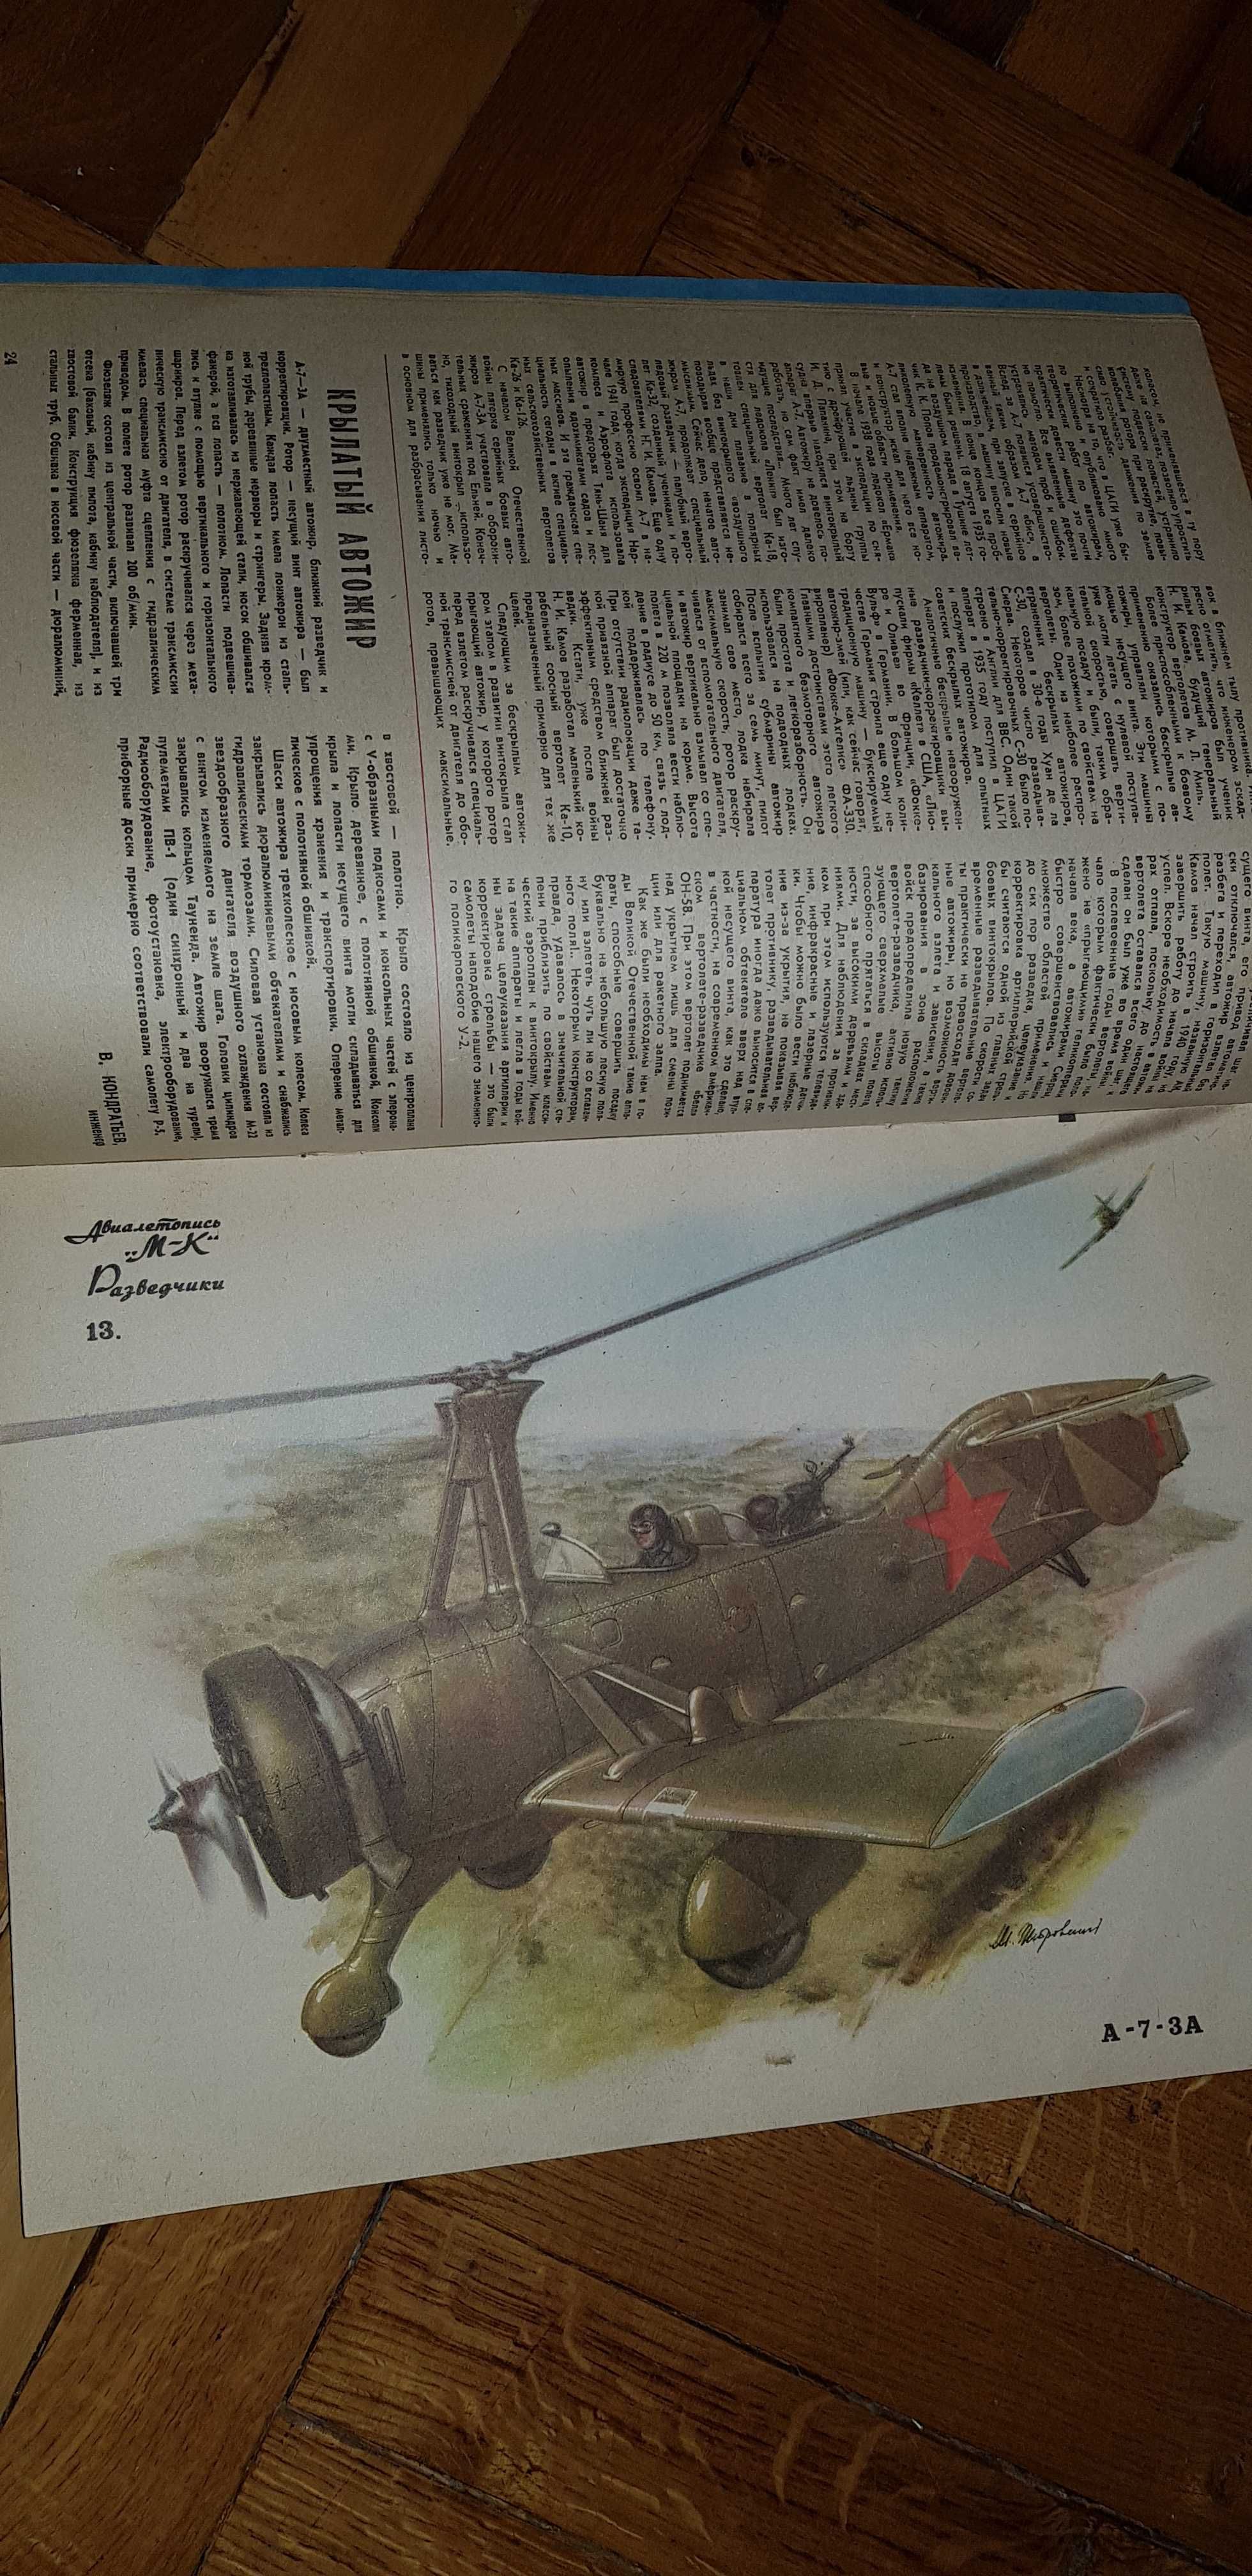 Журнал Моделист-Конструктор. 1987/3.